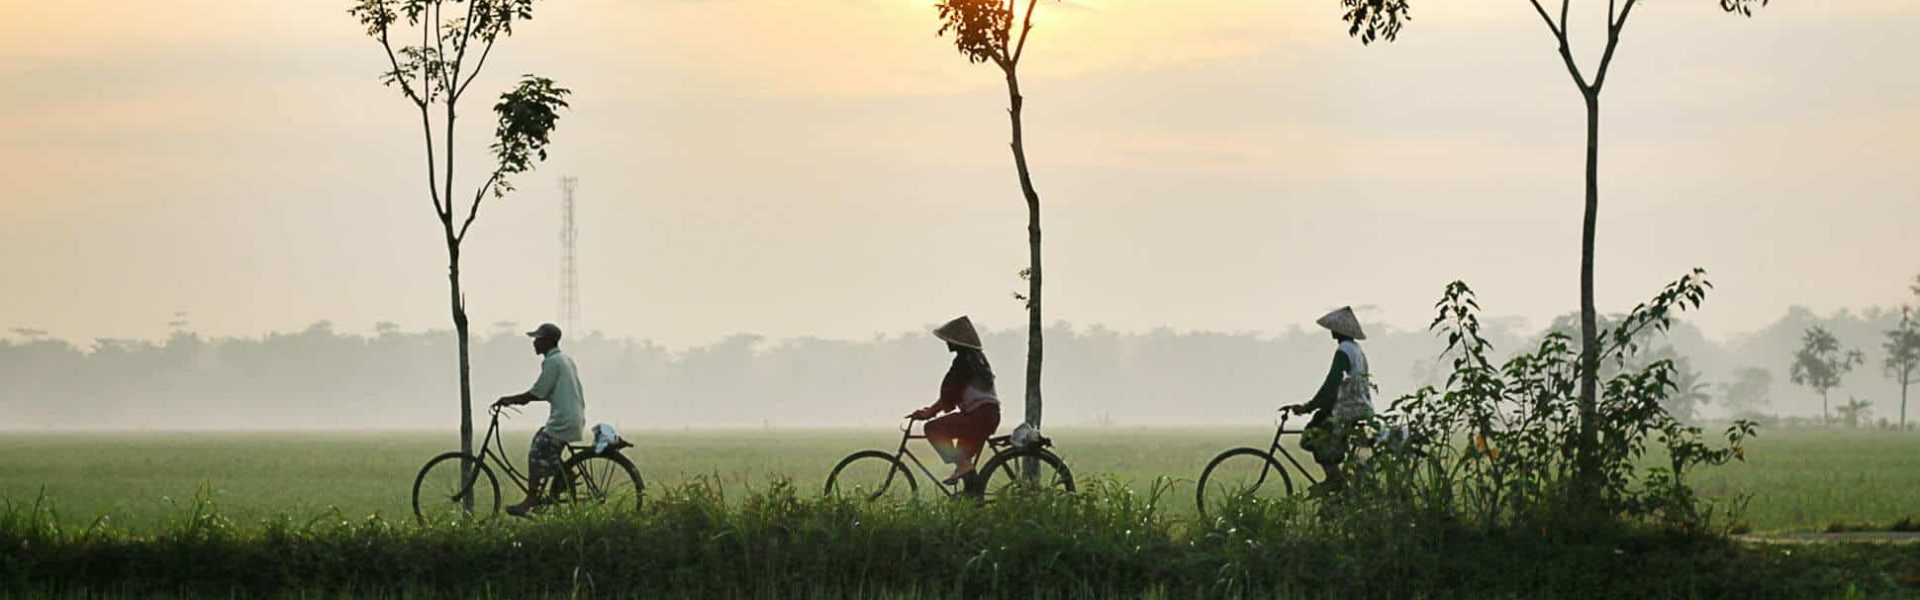 Silueta de personas en bicicleta en Asia